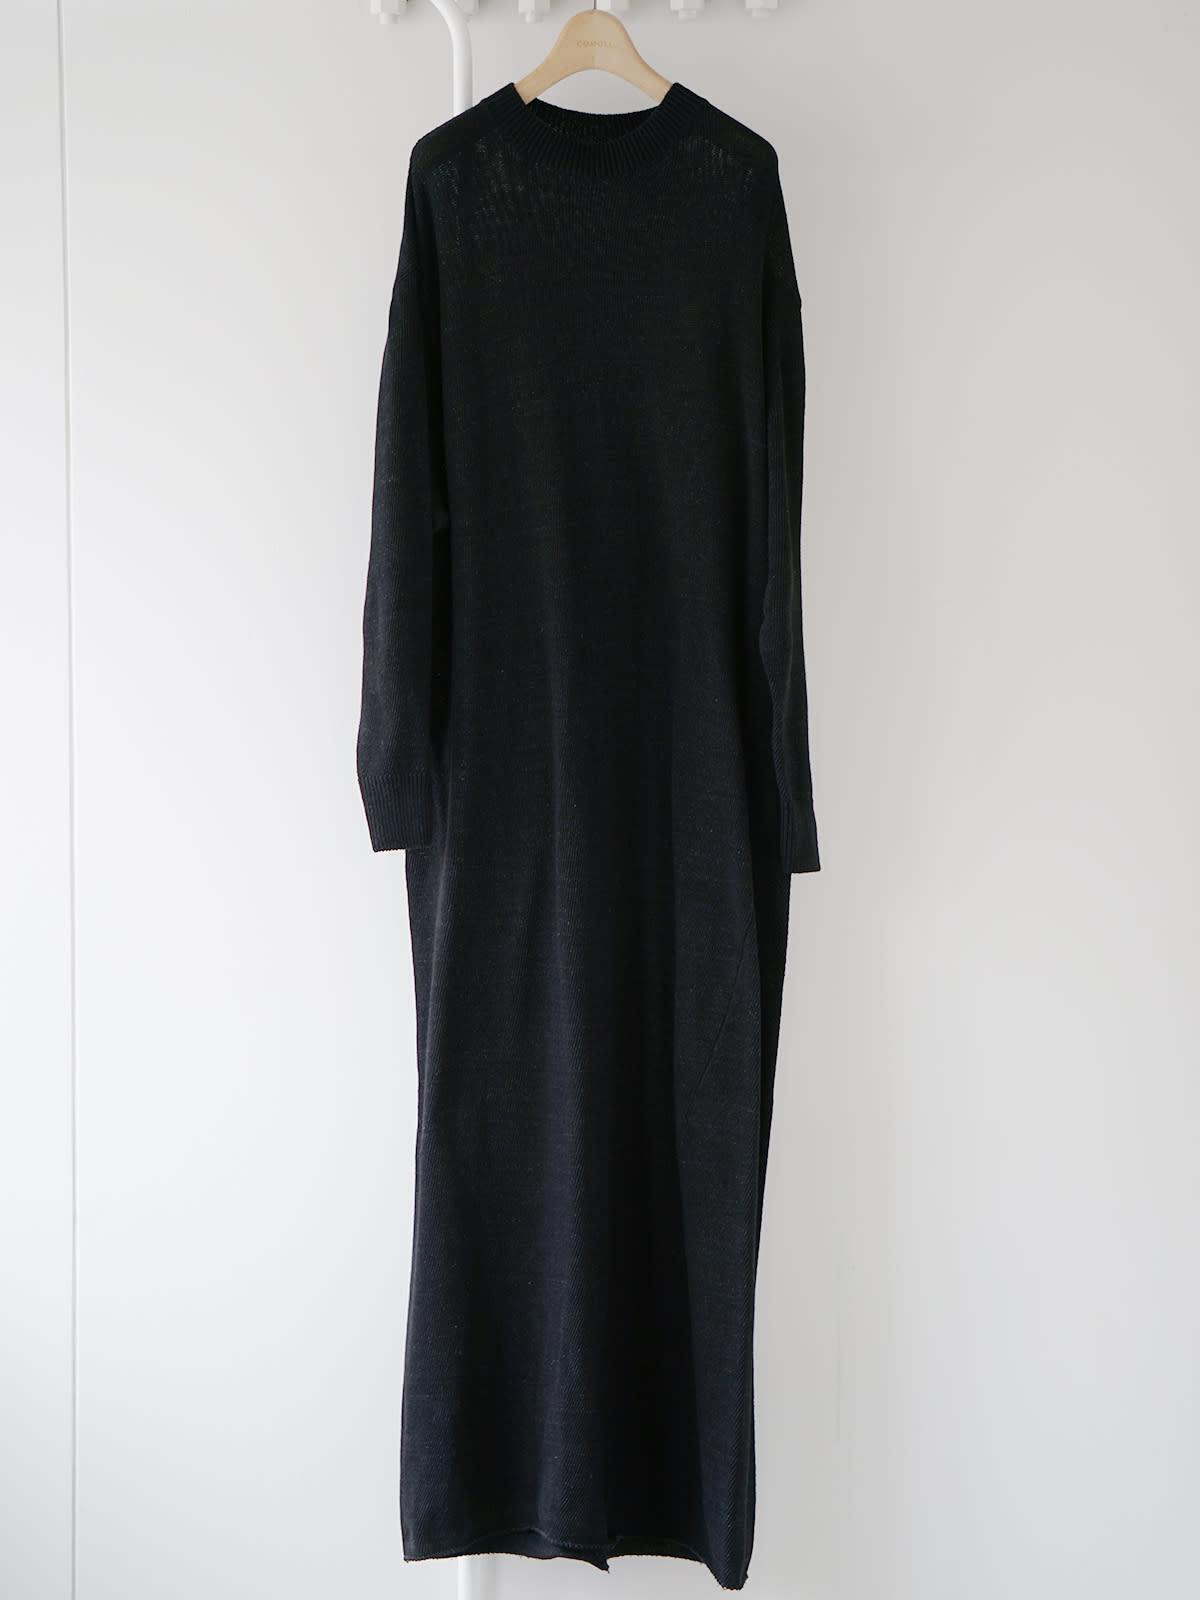 black knit dress Z1